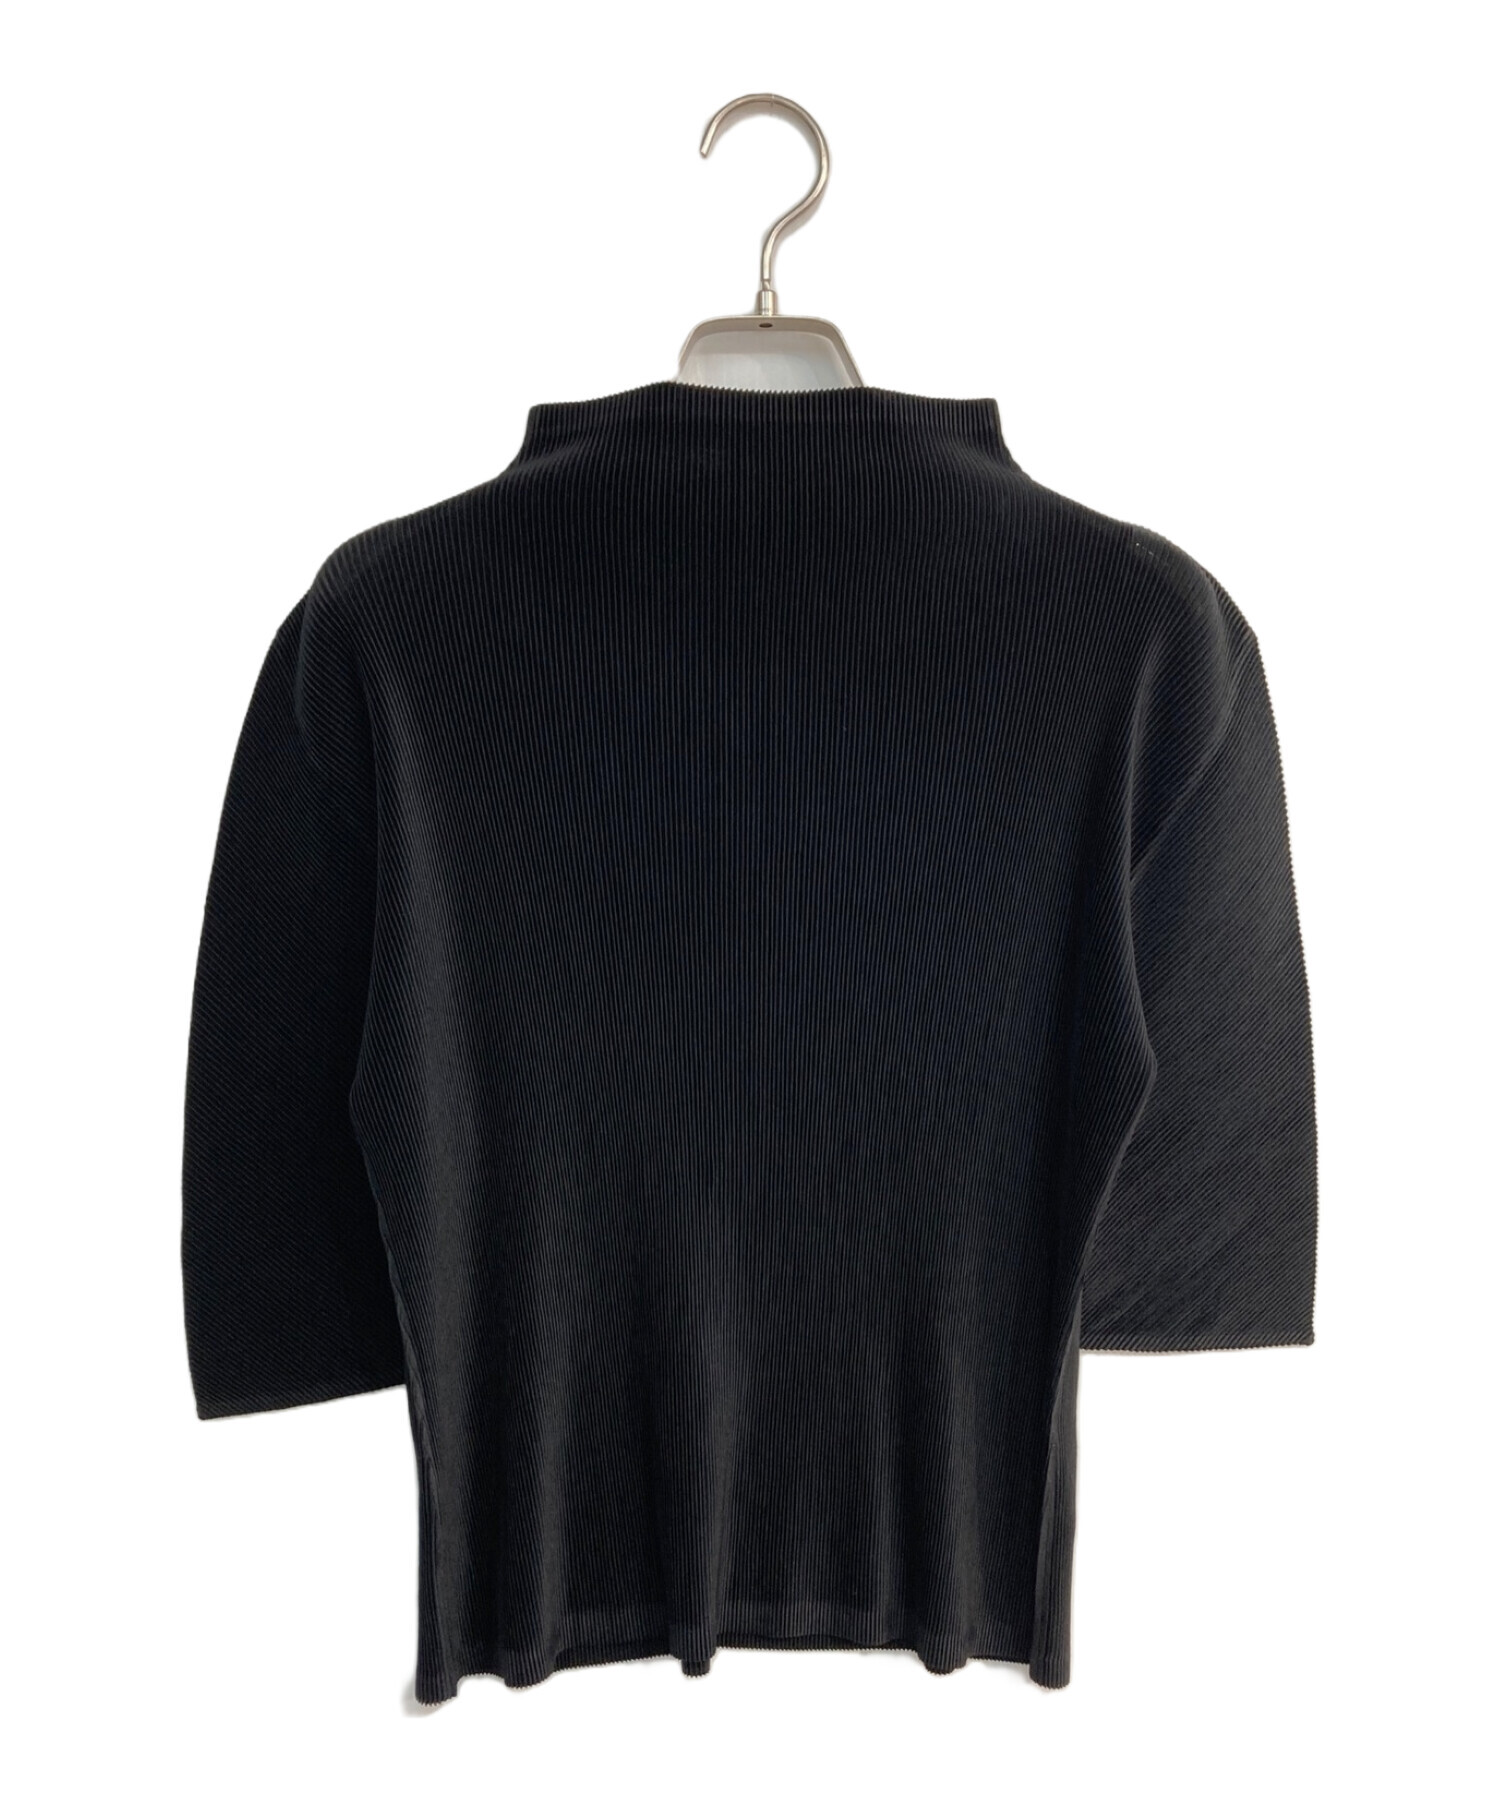 プリーツプリーズ ハイネック トップス ブラウス ブラック 黒 半袖リセのファッション